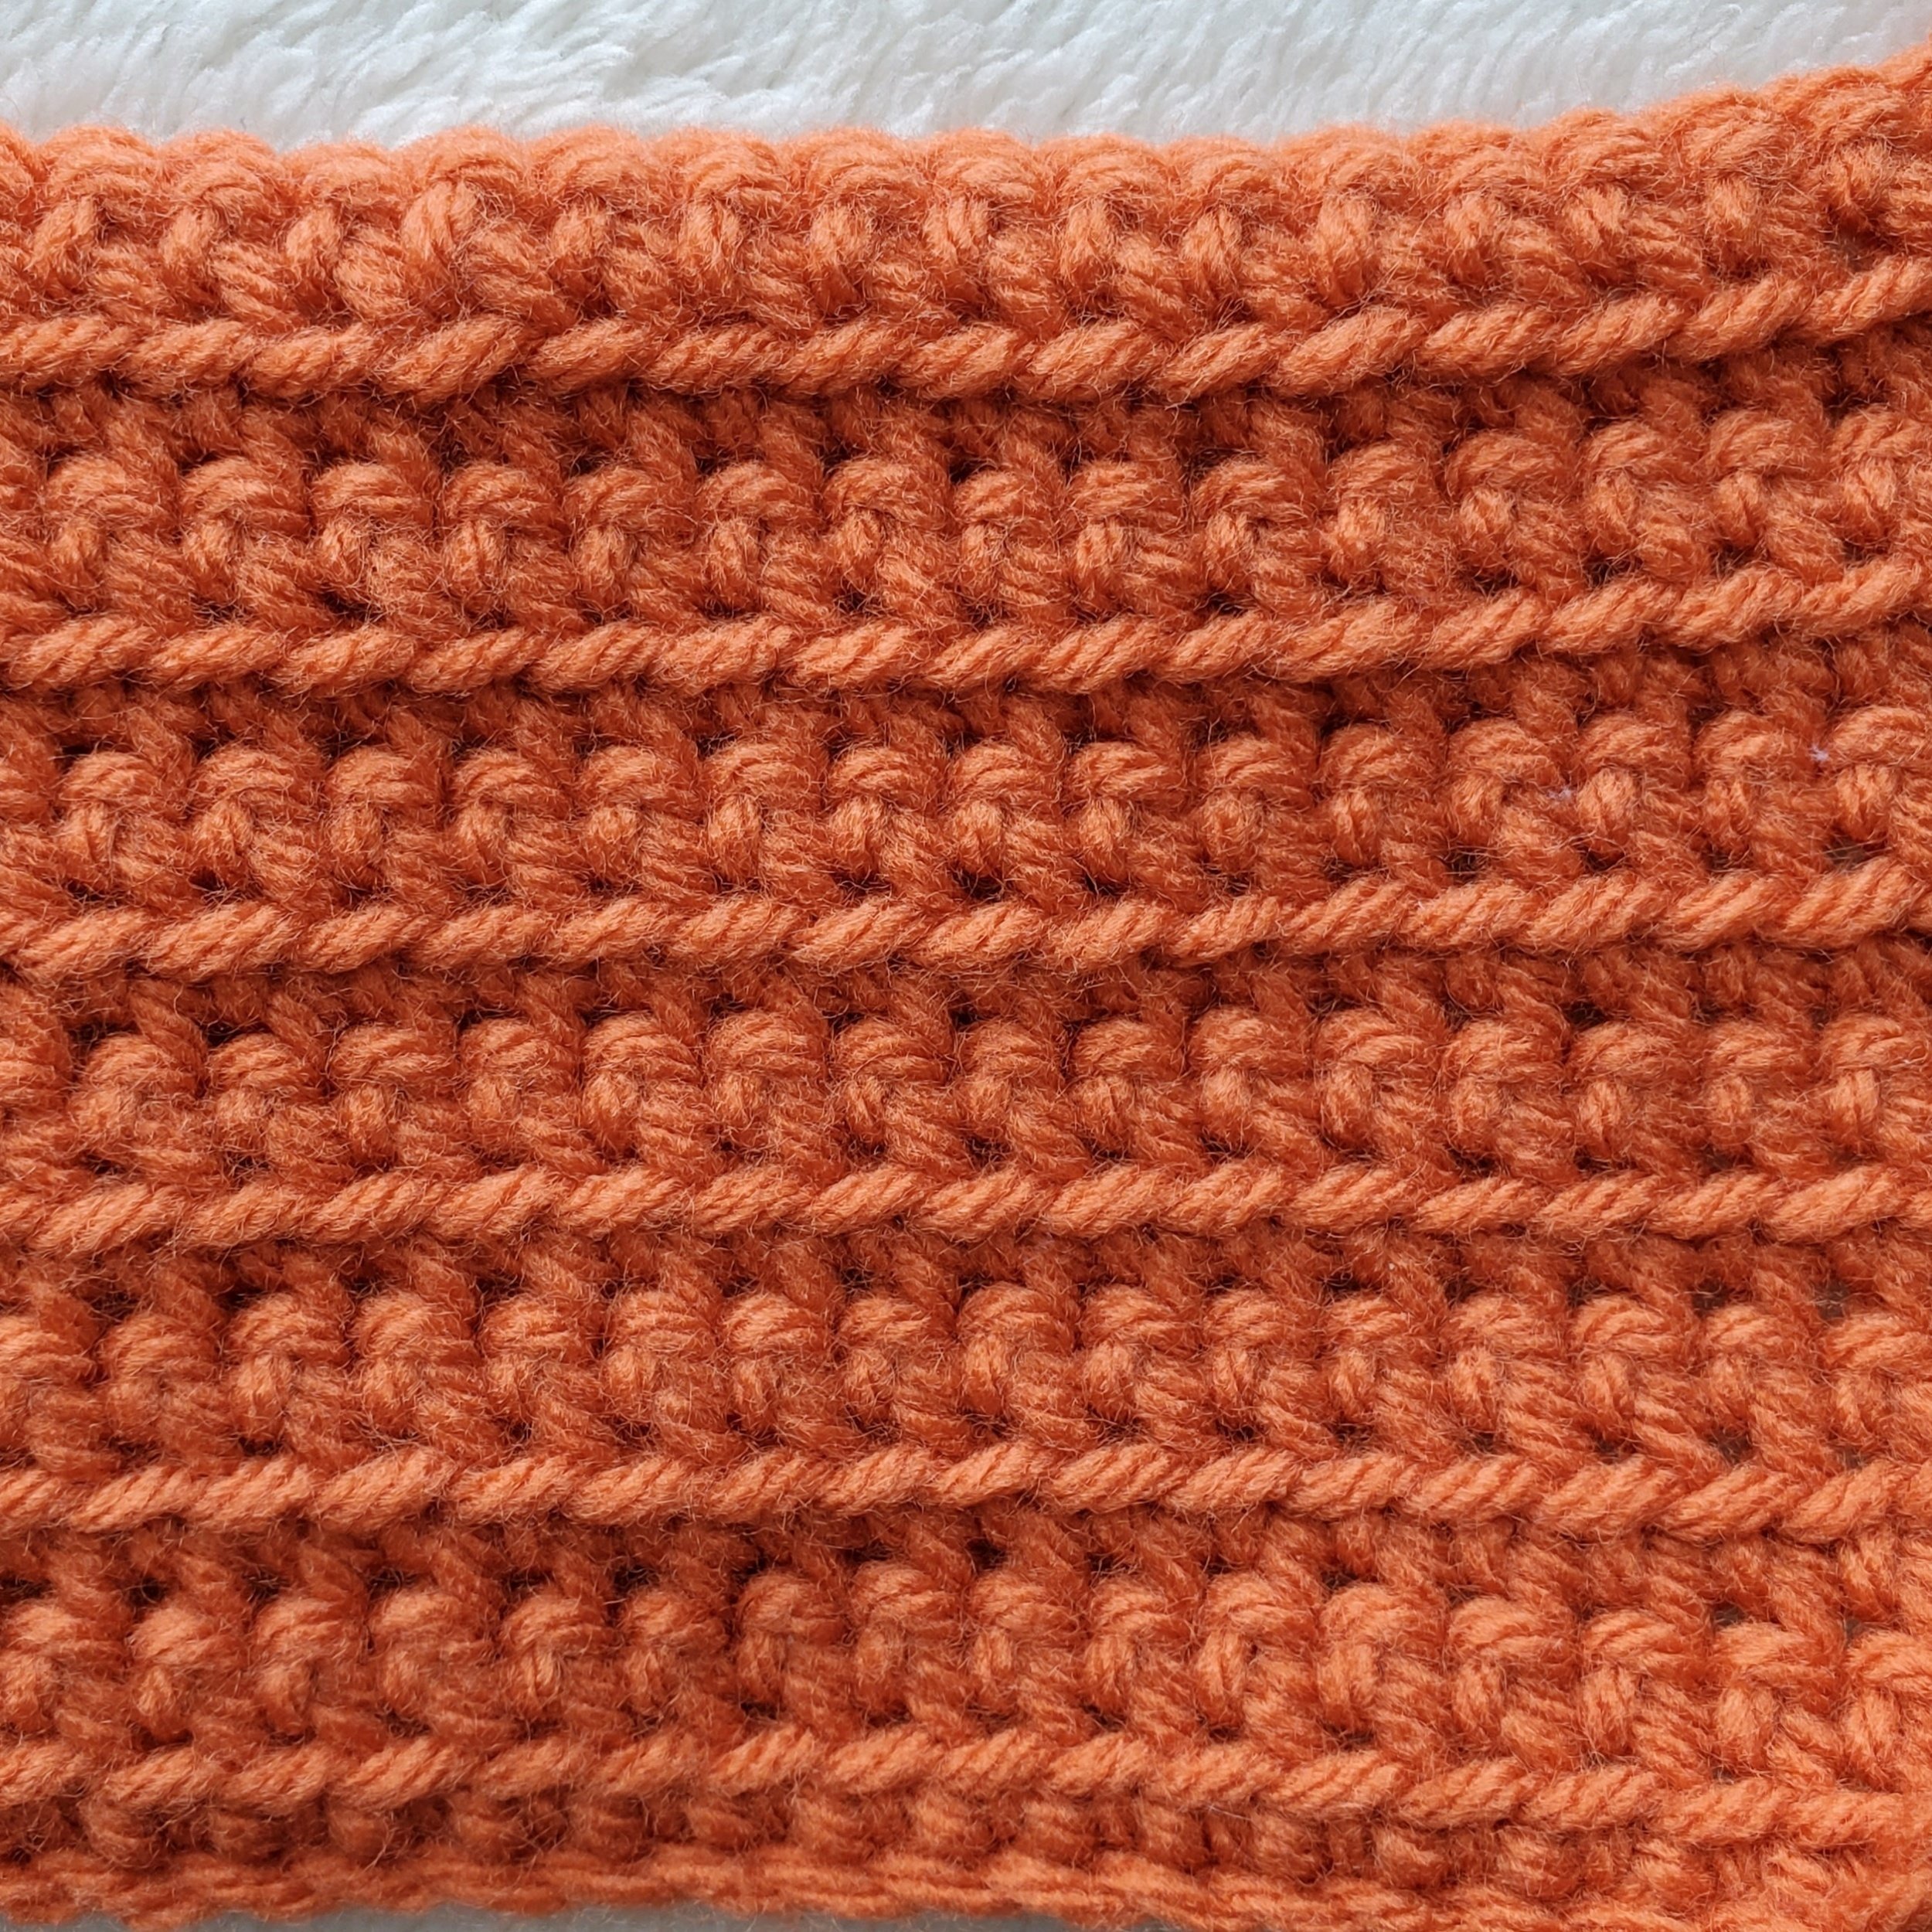 DIY: Chain Loop Yarn Pom Free Tutorial - A Crocheted Simplicity